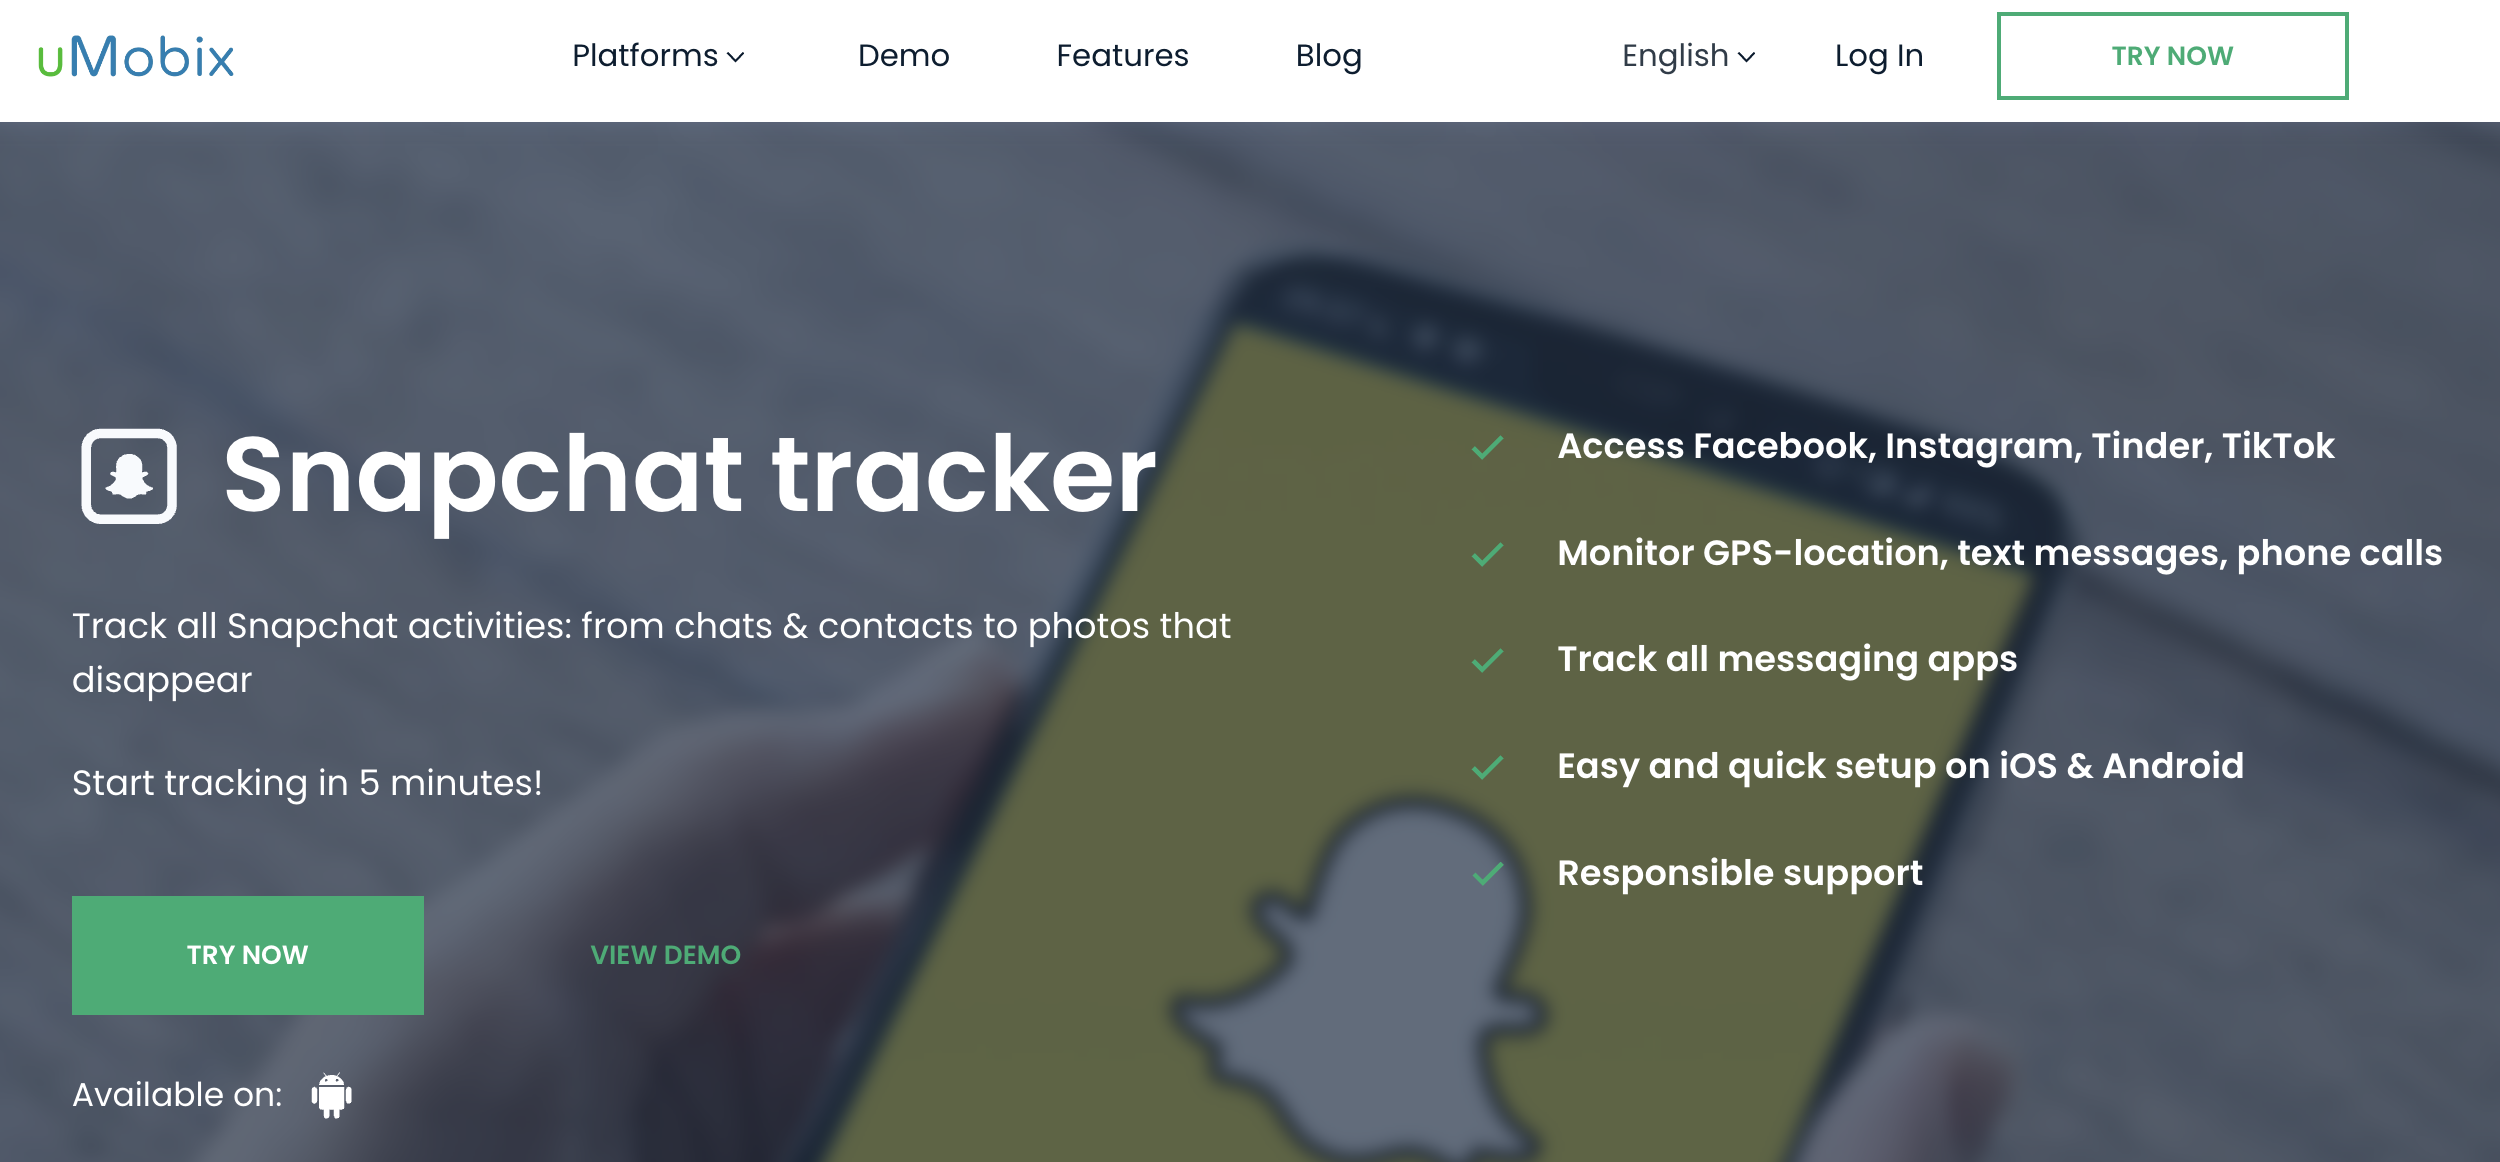 umobix snapchat tracker